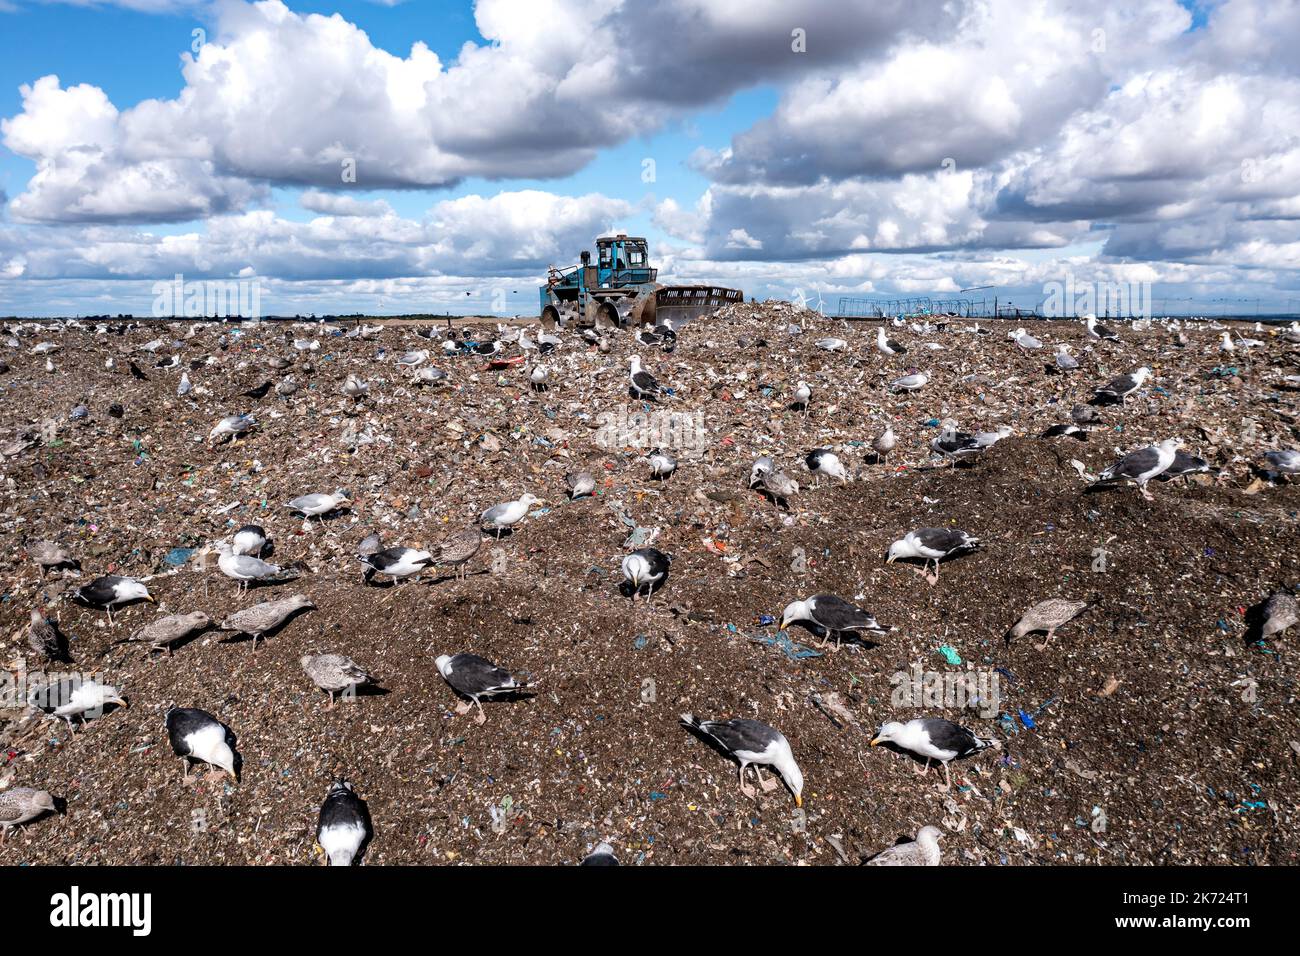 Eine Bulldozer-Maschine, die Abfall und Hausmüll auf eine große Deponie mit Vögeln bewegt, die nach Nahrung wüten Stockfoto